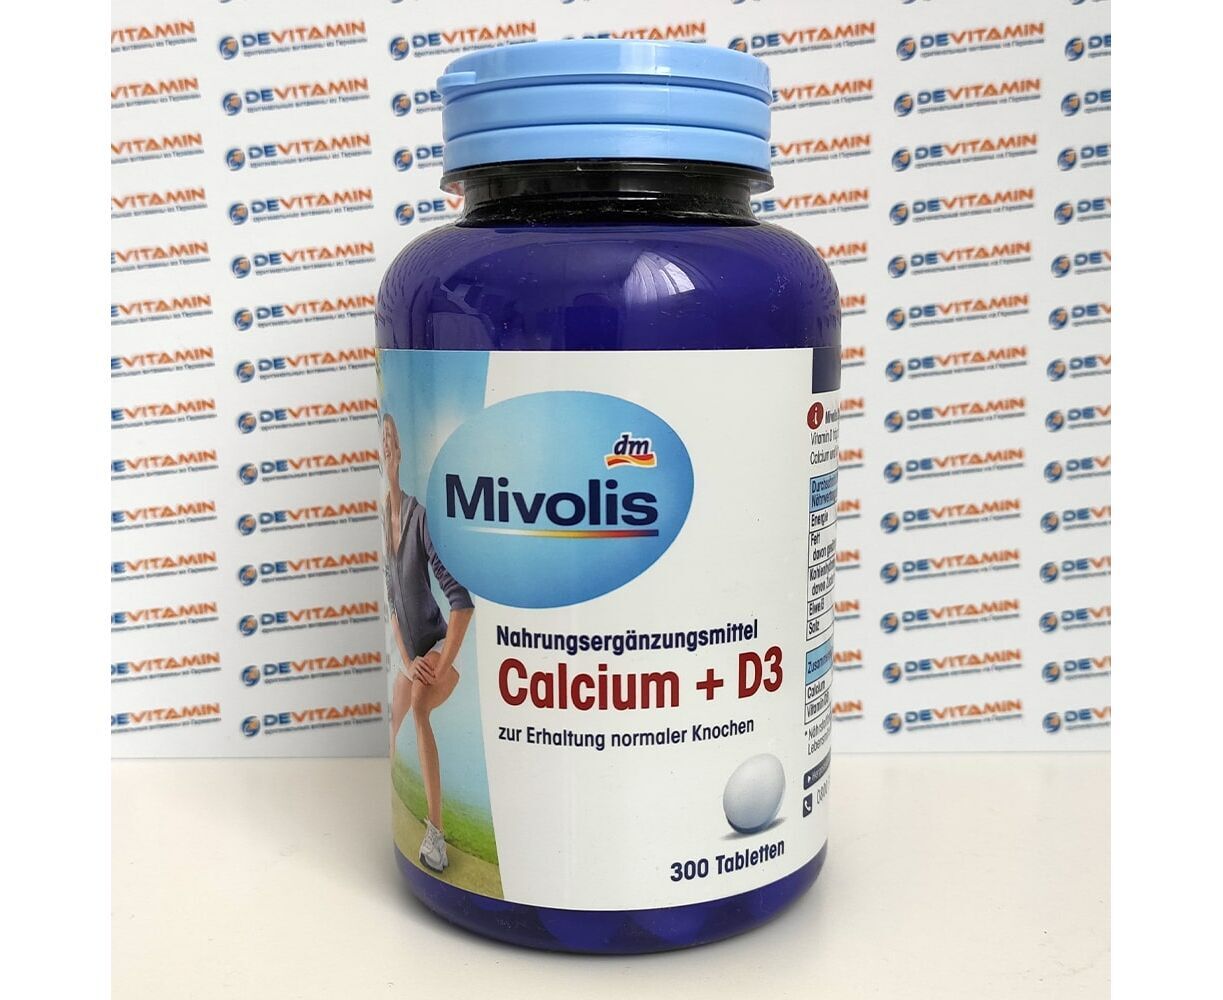 Кальций и д3 можно вместе. Витамин Mivolis Calcium +d3. Mivolis кальций + d3 таблетки 300 шт., 270 г. Mivolis кальций д3. Mivolis Calcium 600 + Vitamin d3 + k1 + k2, 30 St., 50 g.